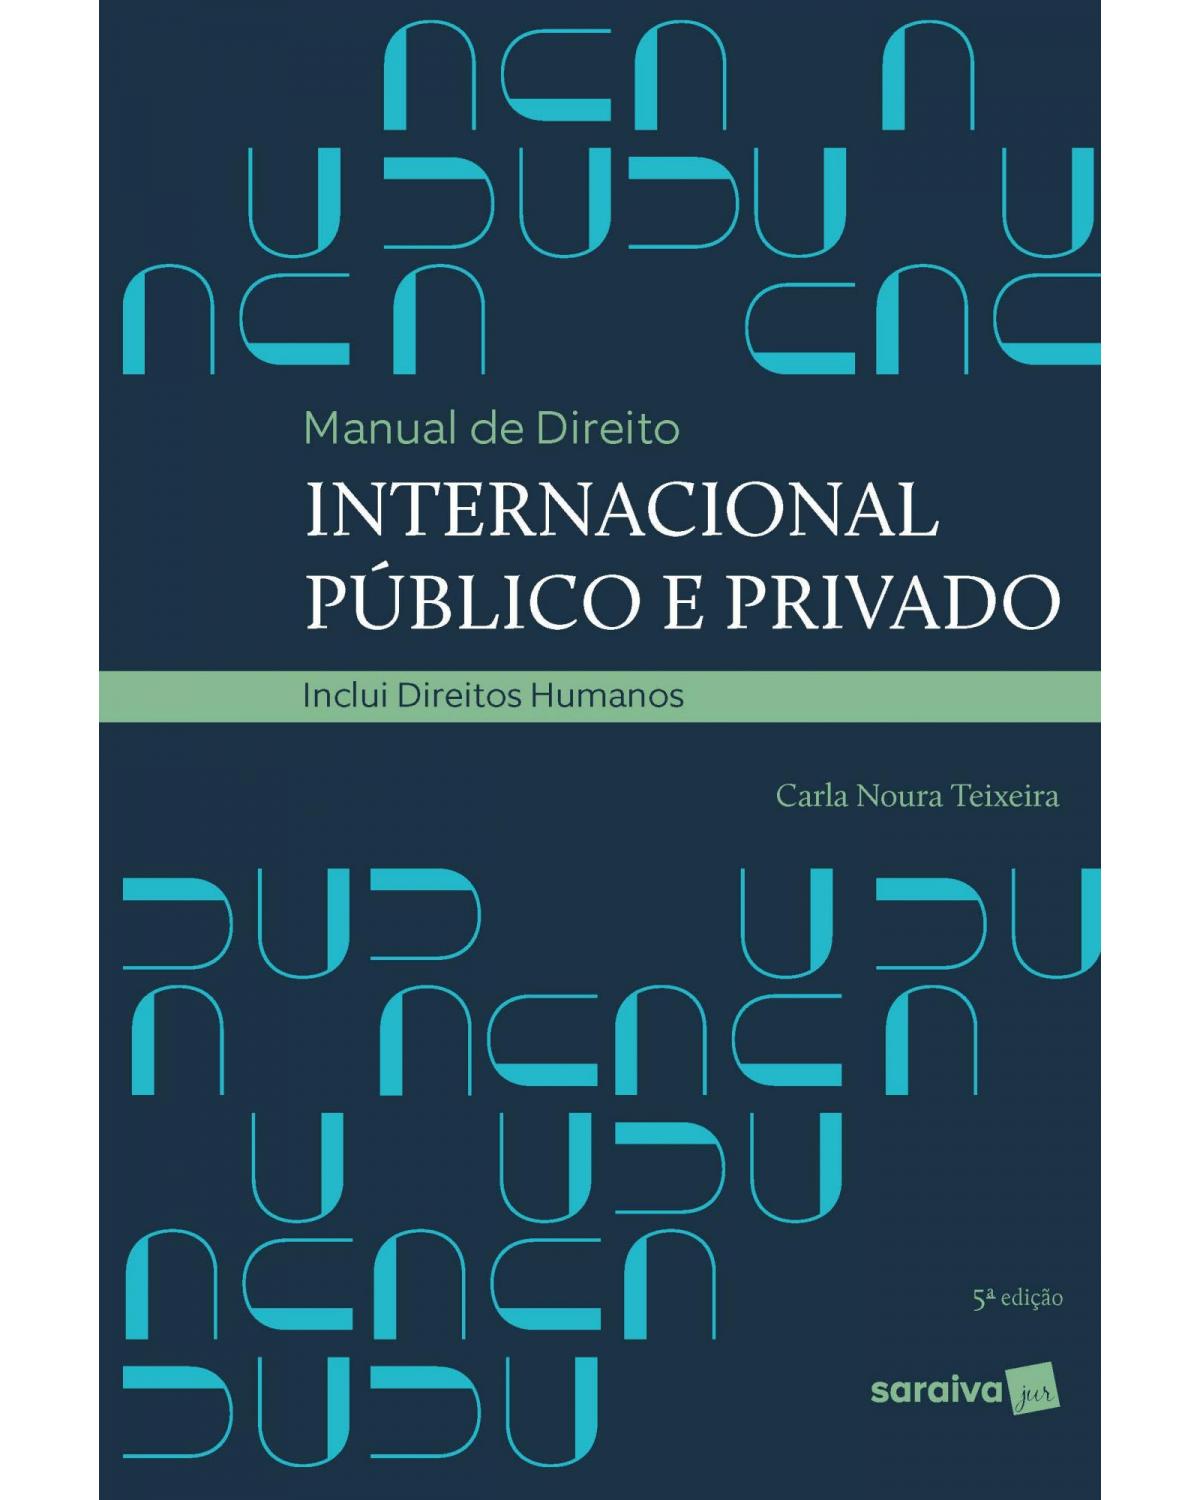 Manual de direito internacional público e privado - inclui direitos humanos - 5ª Edição | 2020